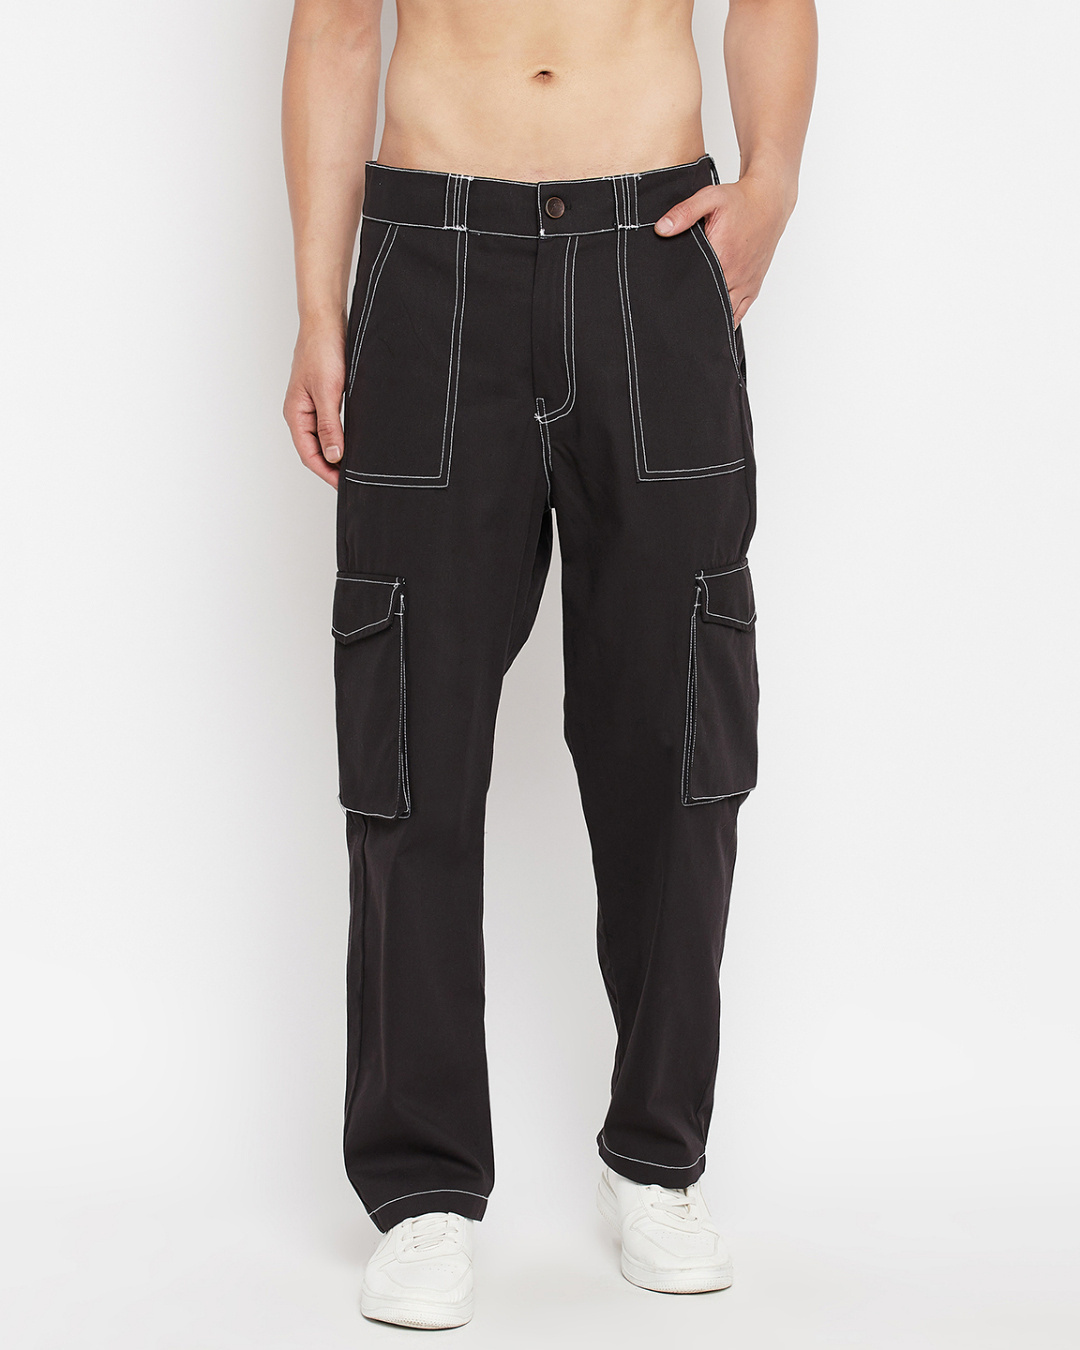 Buy Men's Black Oversized Cotton Cargo Pants Online at Bewakoof